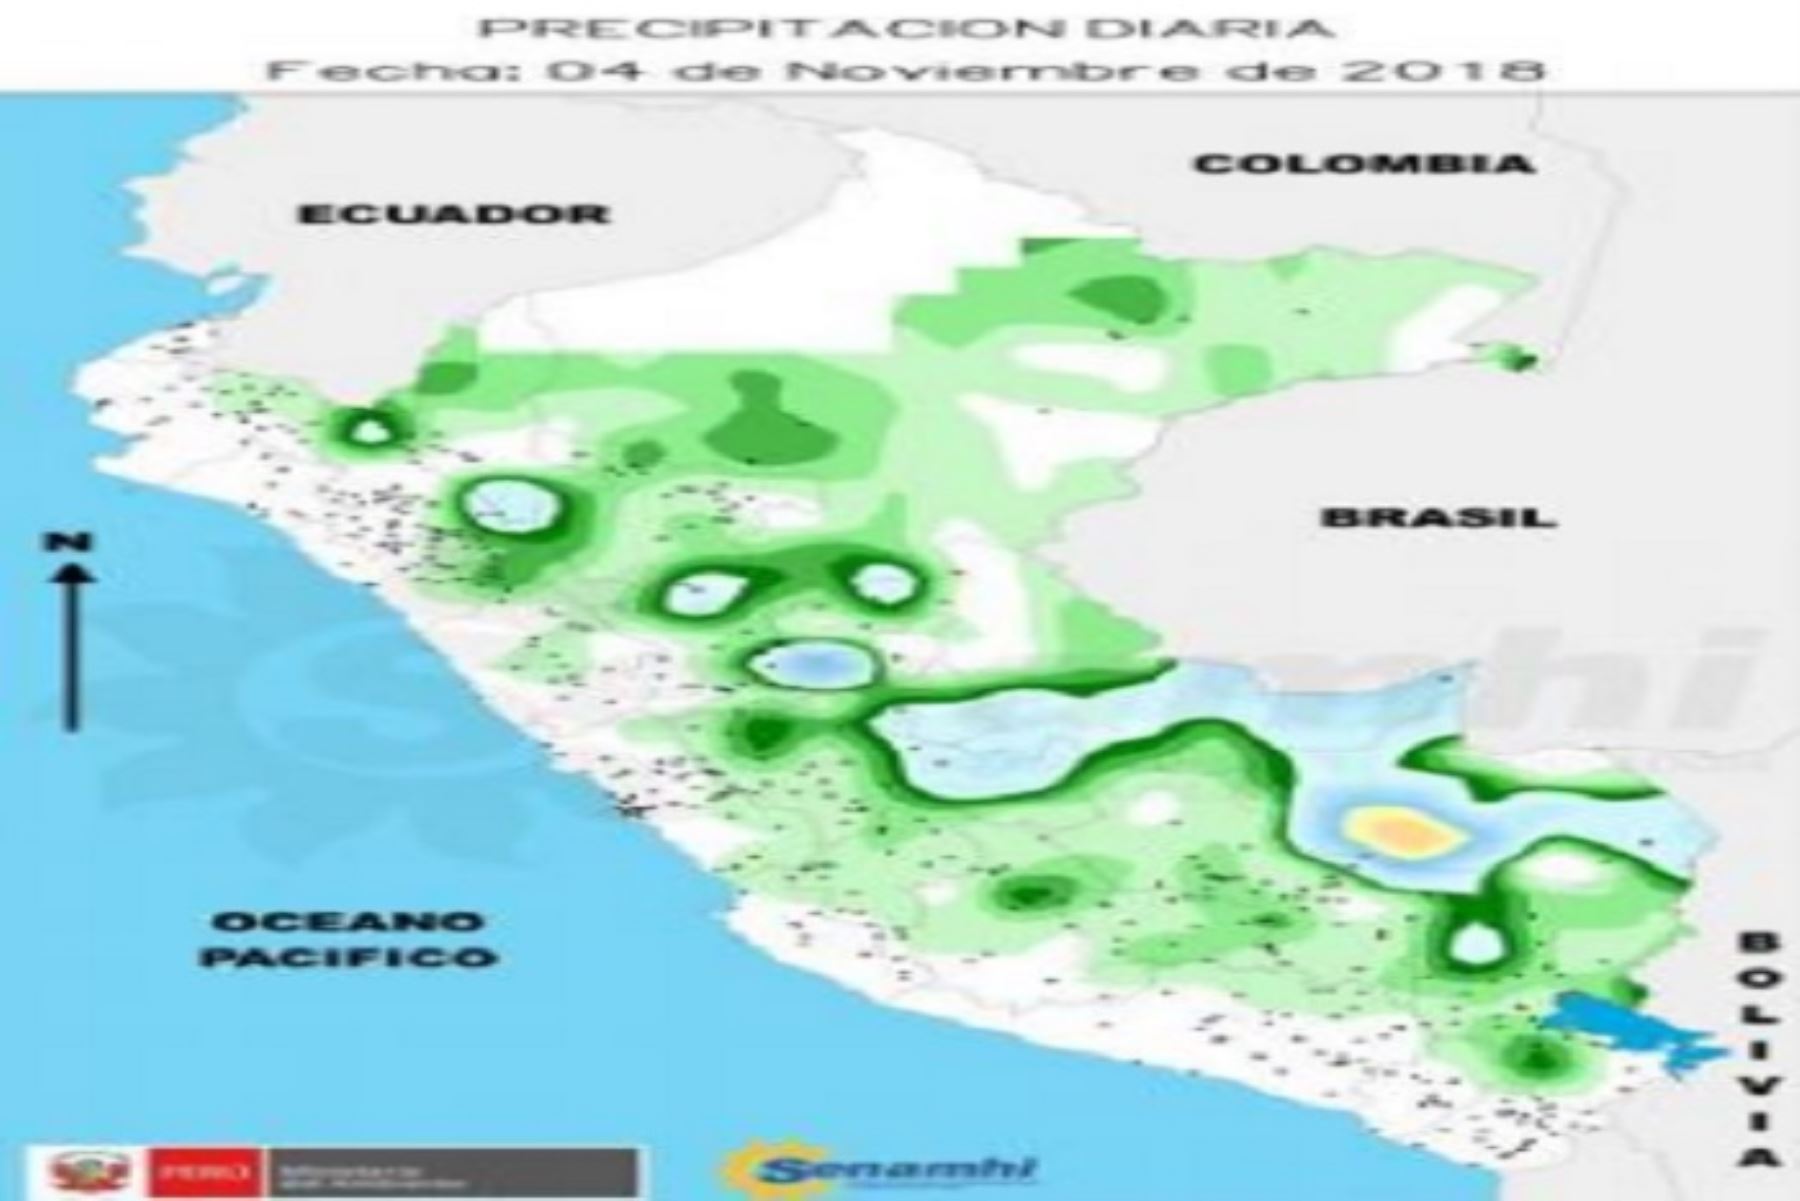 El mayor acumulado de lluvia se registró en el distrito de Chirinos, provincia de SanIgnacio, región Cajamarca, al registrar un acumulado de 41.8 milímetros de agua por día enla estación Chirinos; informó el Servicio Nacional de Meteorología e Hidrología (Senamhi).